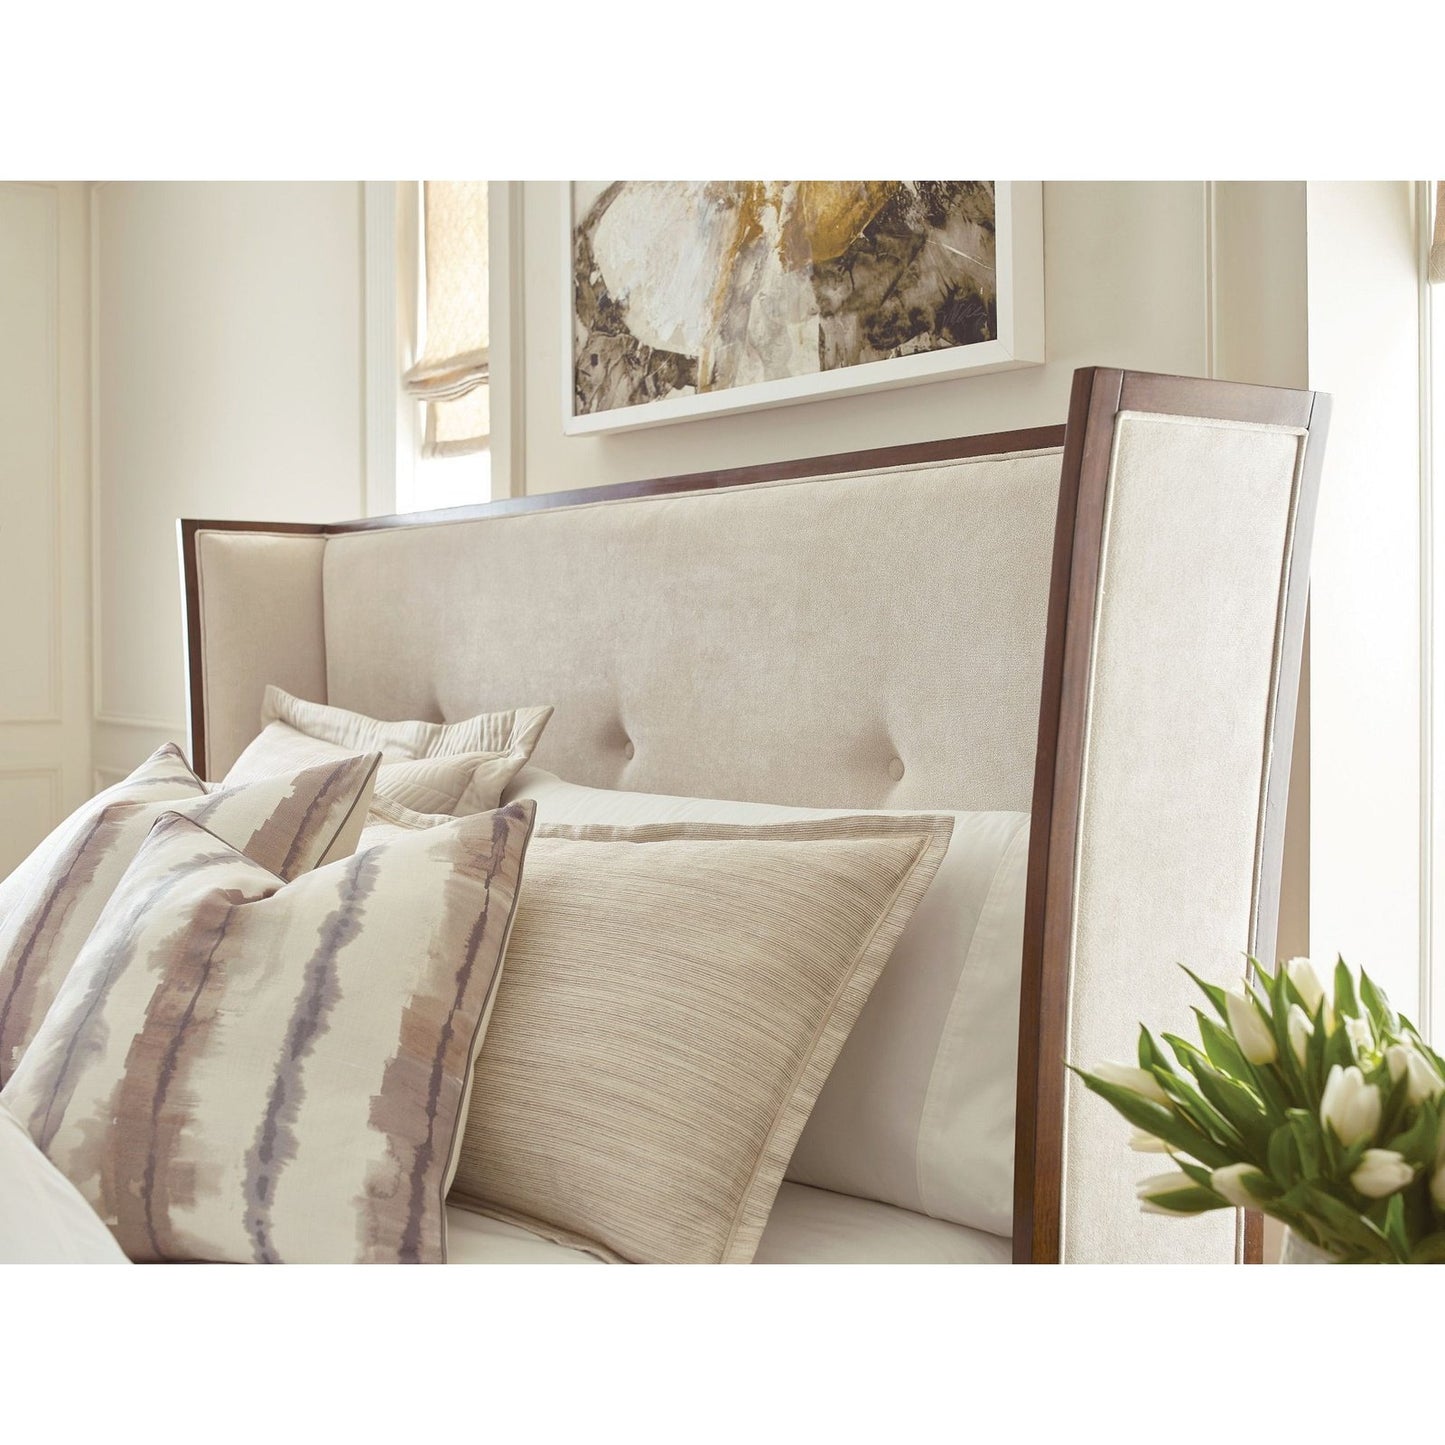 Morris Upholstered Queen Bed